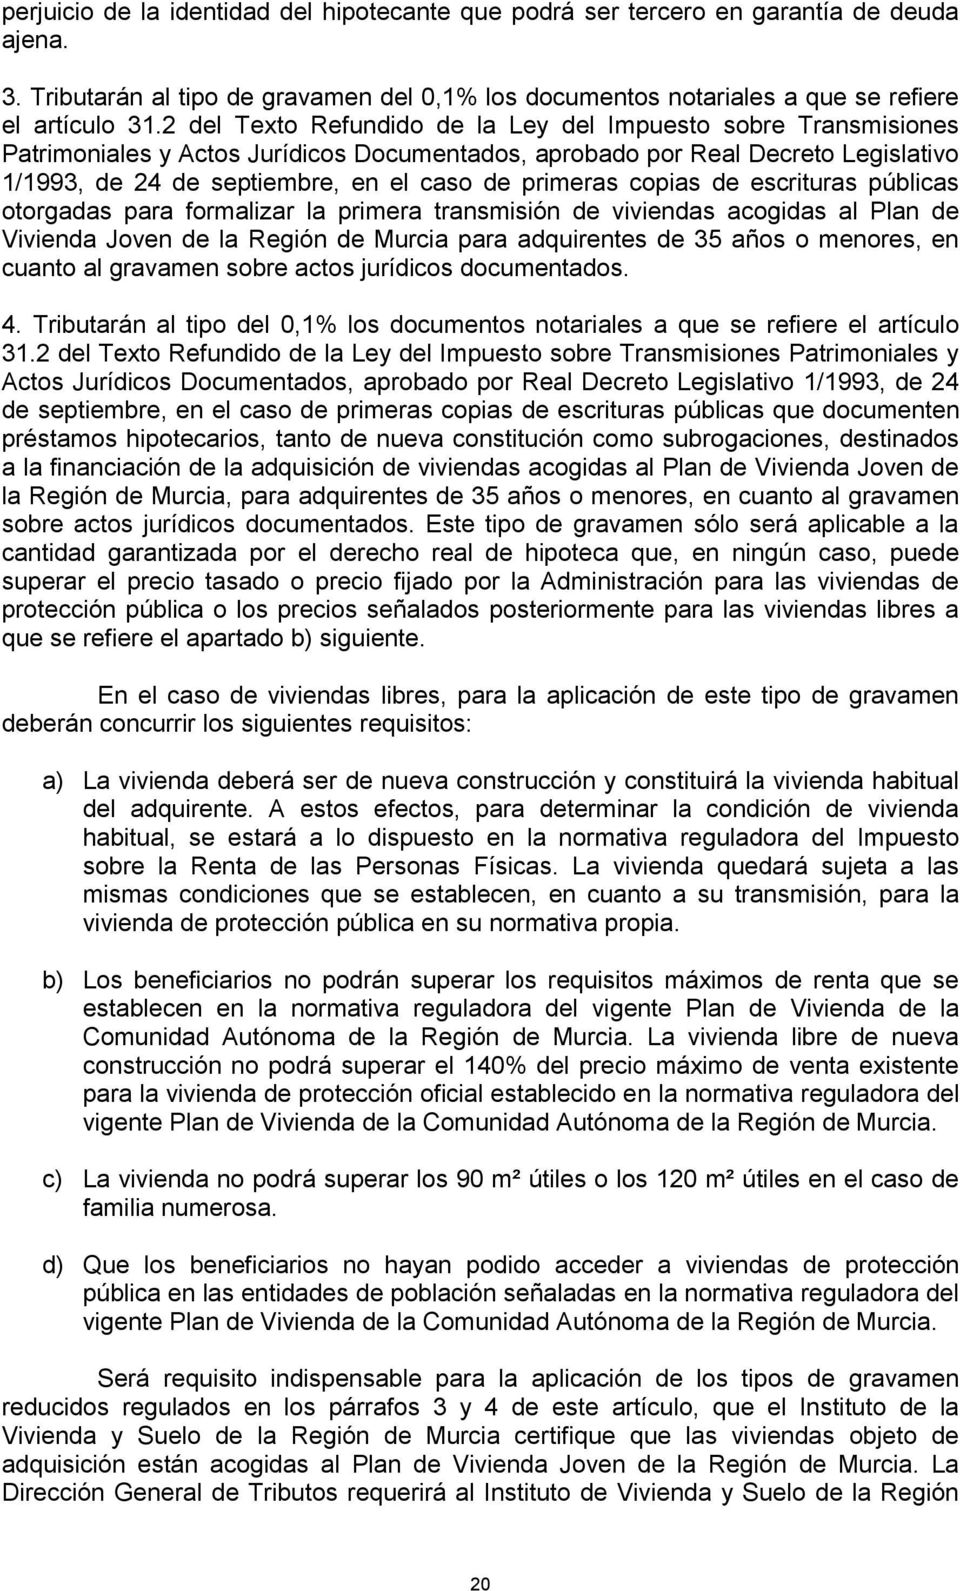 primeras copias de escrituras públicas otorgadas para formalizar la primera transmisión de viviendas acogidas al Plan de Vivienda Joven de la Región de Murcia para adquirentes de 35 años o menores,